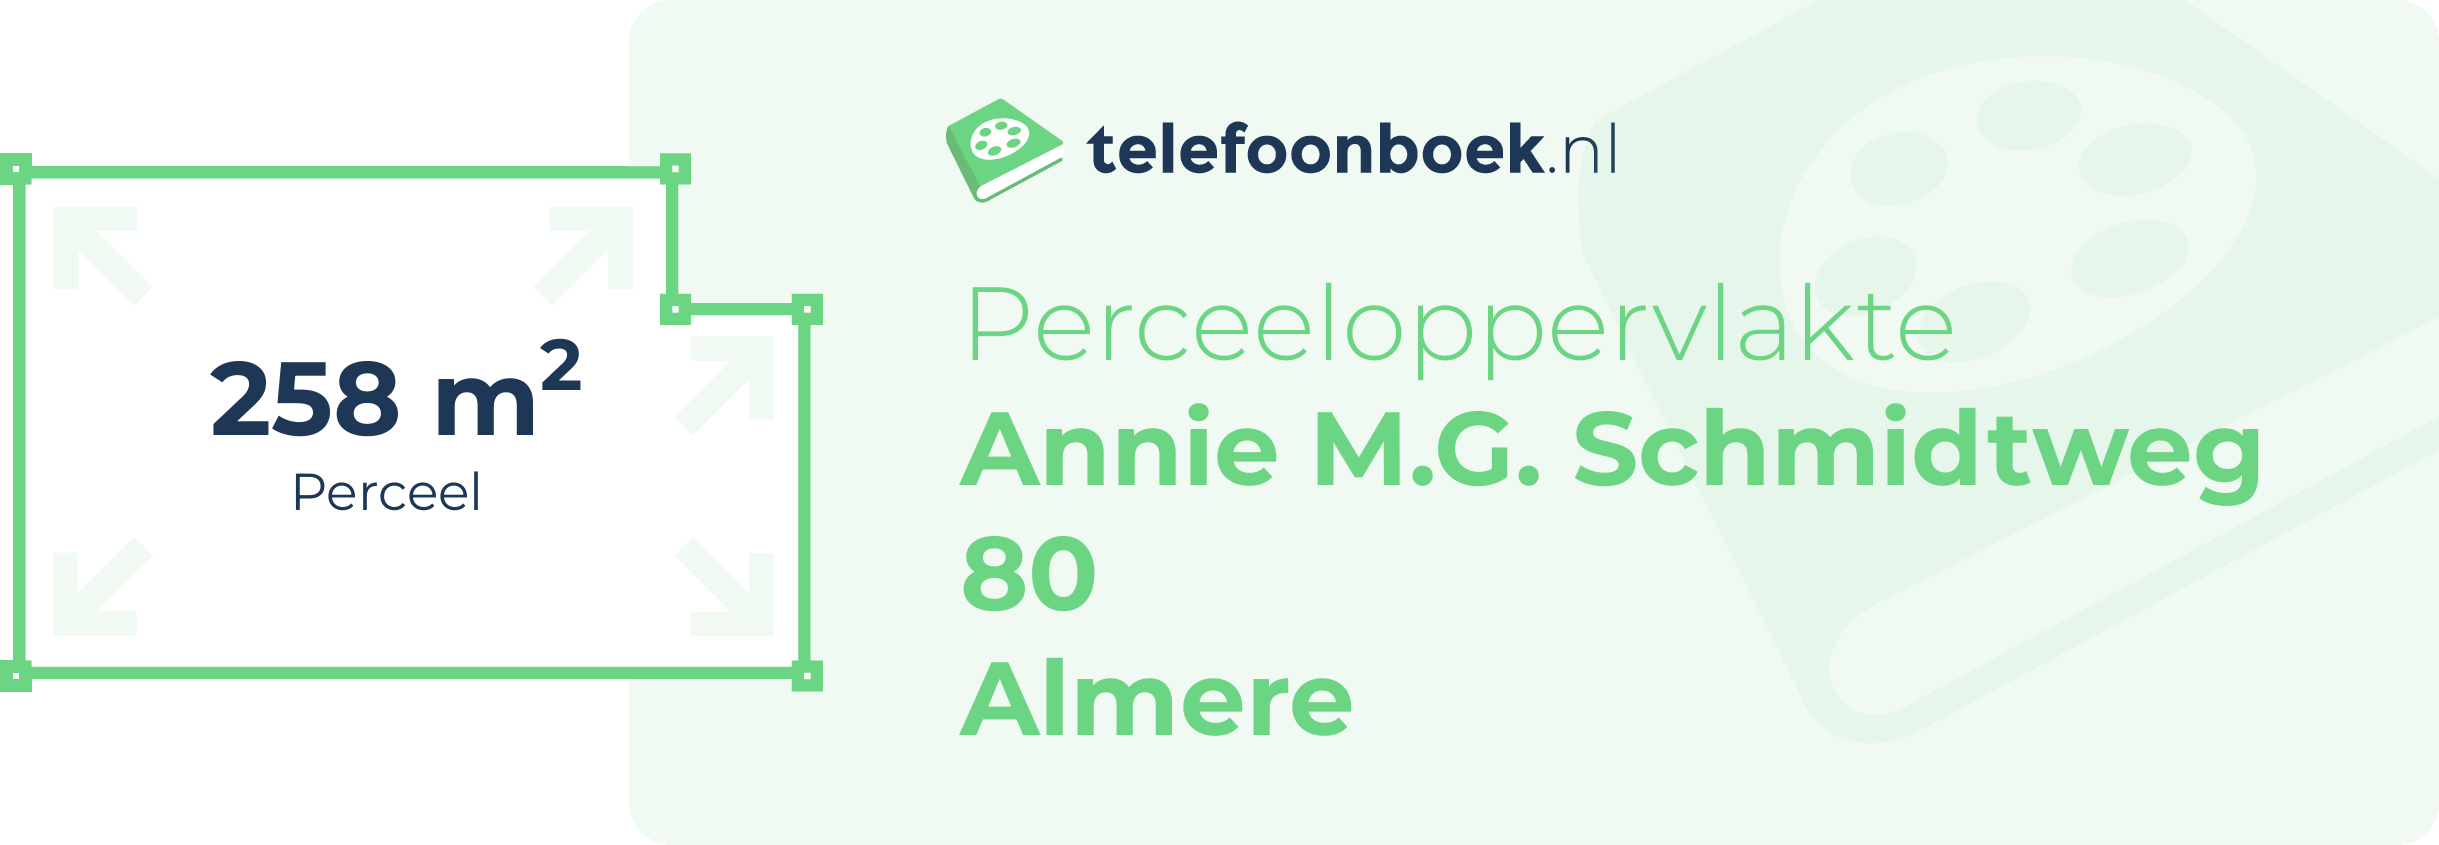 Perceeloppervlakte Annie M.G. Schmidtweg 80 Almere